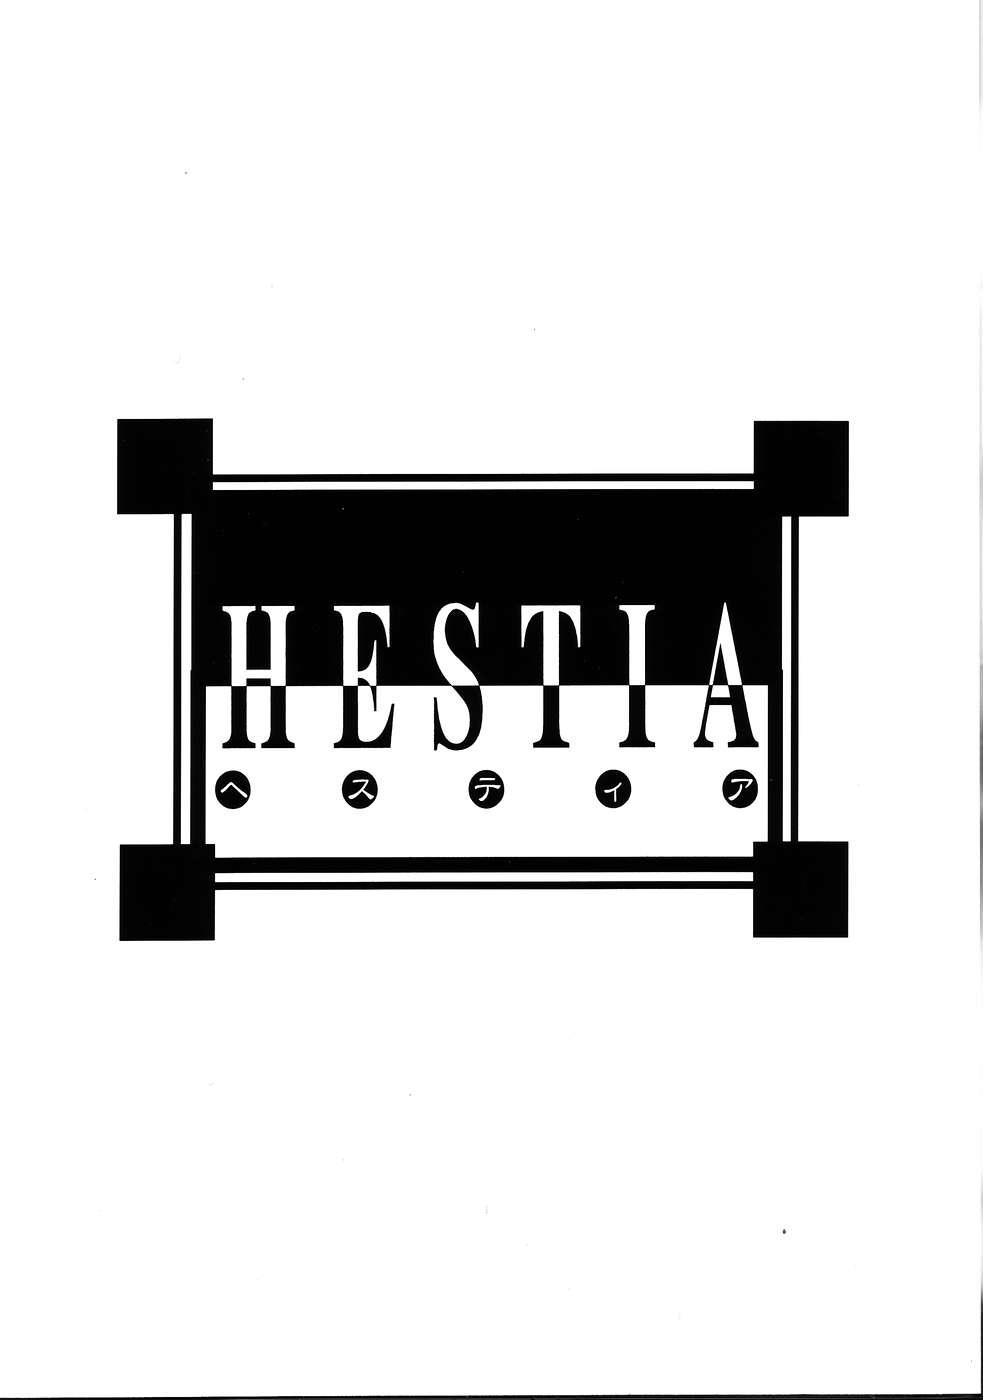 HESTIA 33